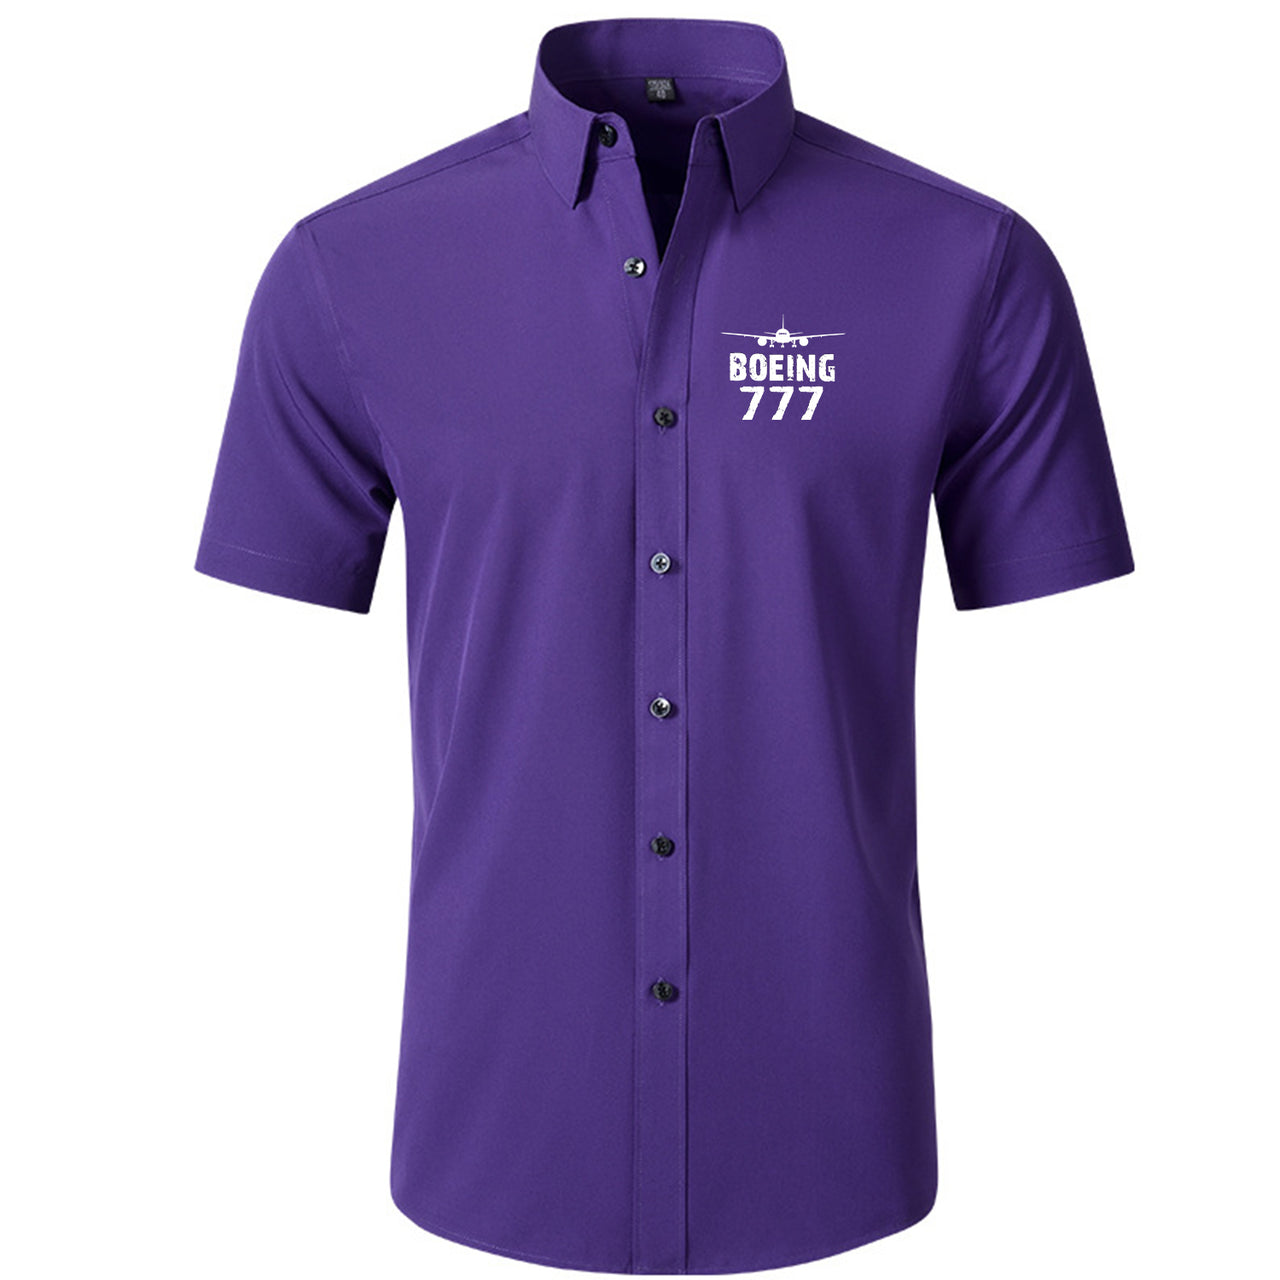 Boeing 777 & Plane Designed Short Sleeve Shirts